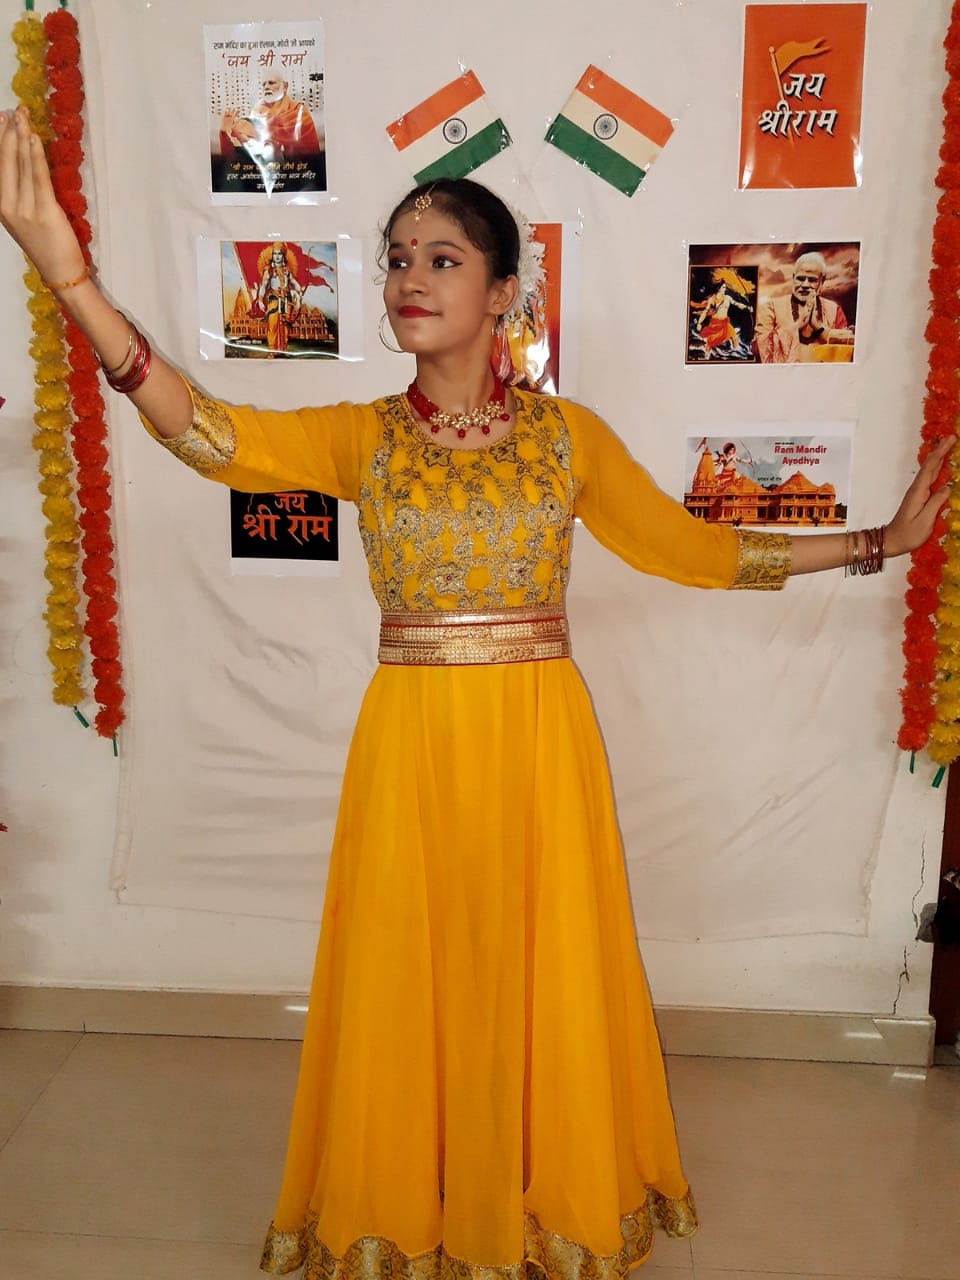 वैष्णवी शुक्ला ने एक घण्टे राम भजनों पर किया कथक, बॉलीवुड एवं क्लासिकल नृत्य